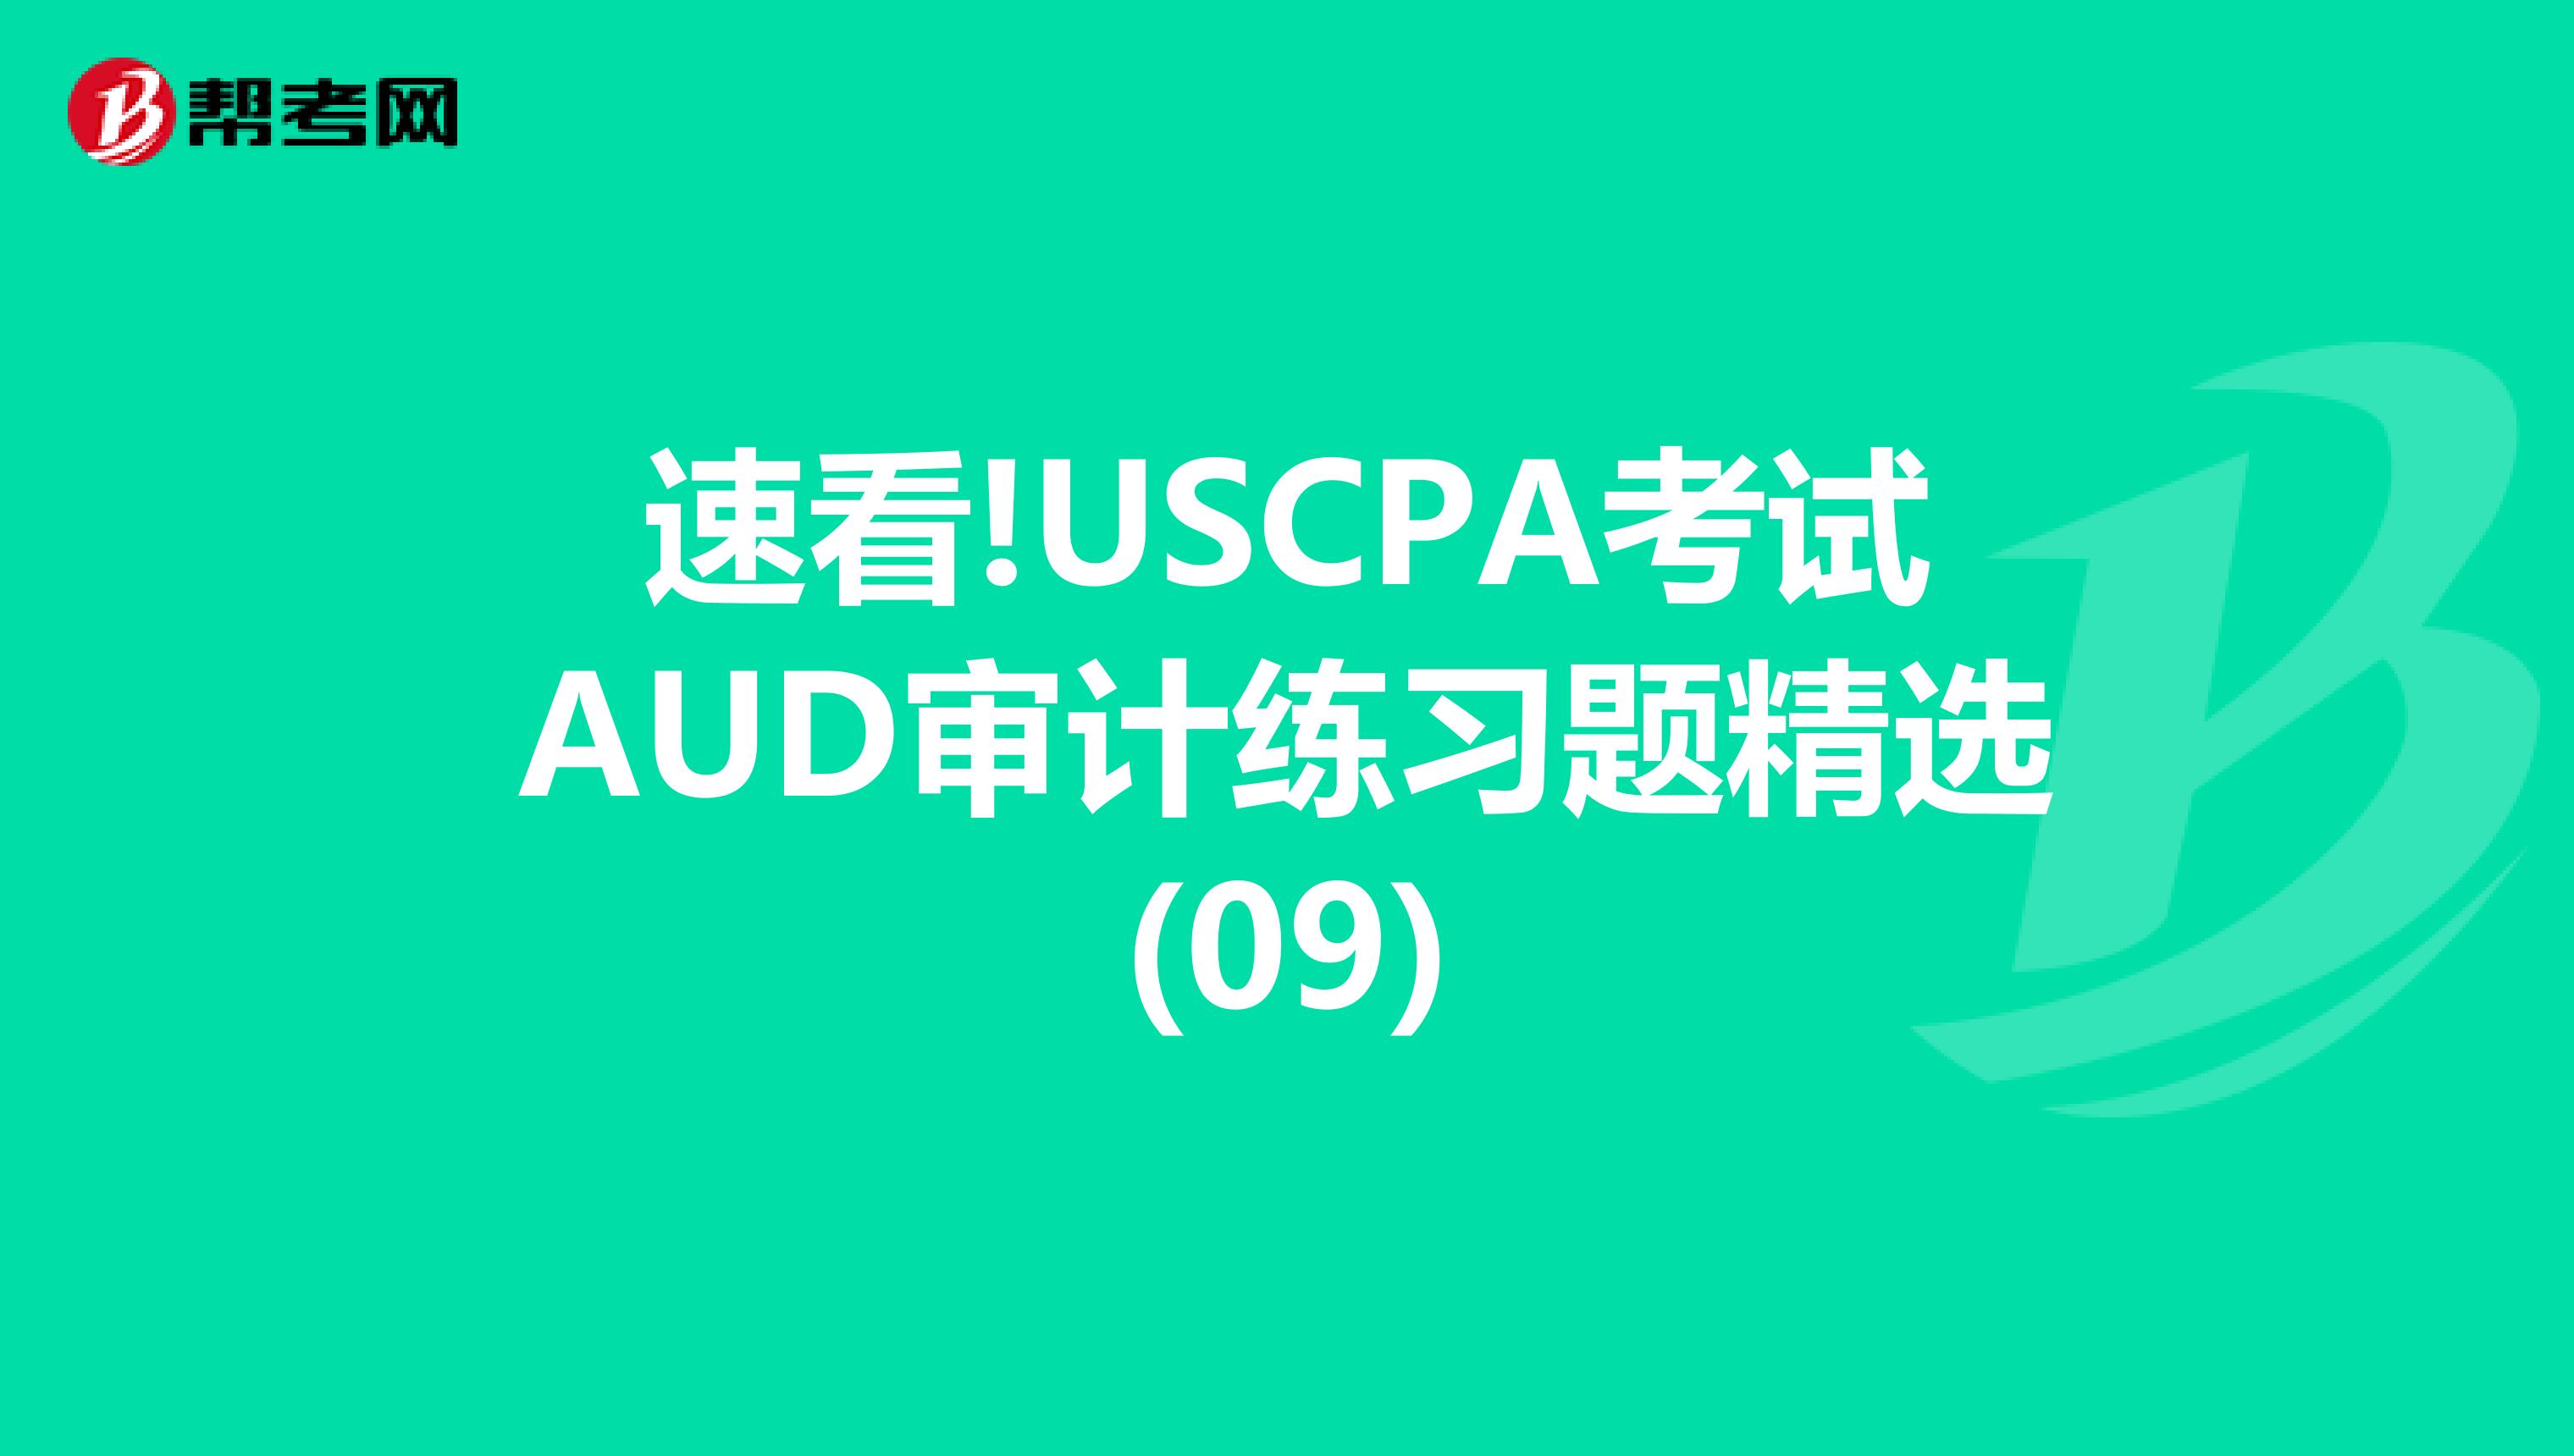 速看!USCPA考试AUD审计练习题精选(09)